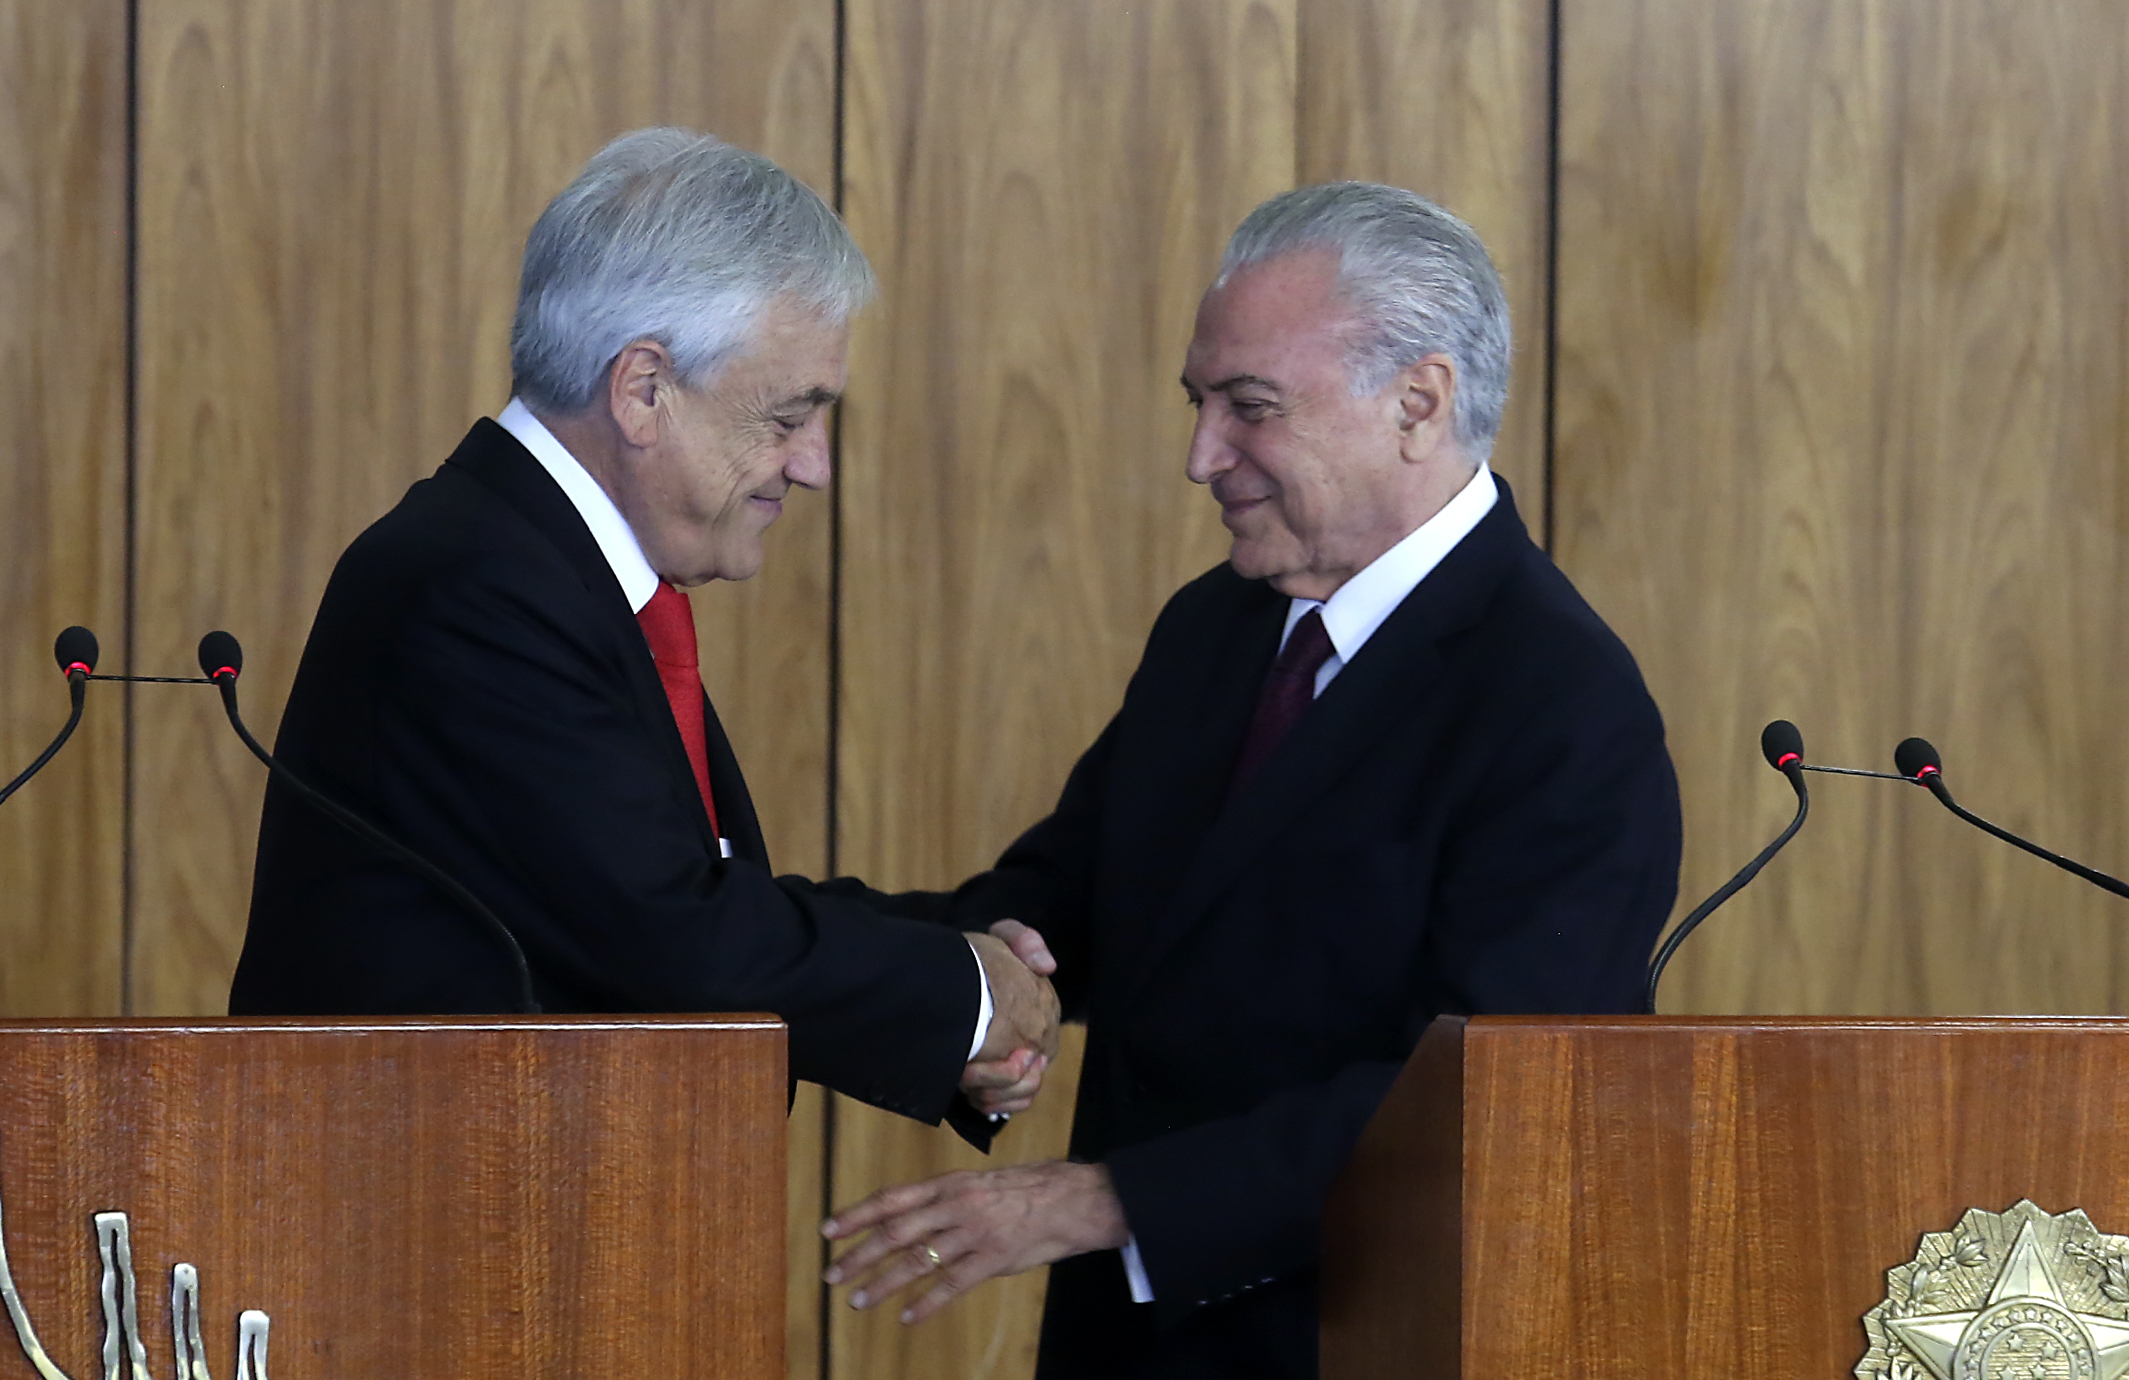 27 de Abril de 2018/BRASILIA El Presidente de la Repblica, Sebastin Piera, junto al Presidente de Brasil, Michel Temer, participa en una ceremonia de firma de acuerdos. FOTO:CRISTOBAL ESCOBAR/AGENCIAUNO